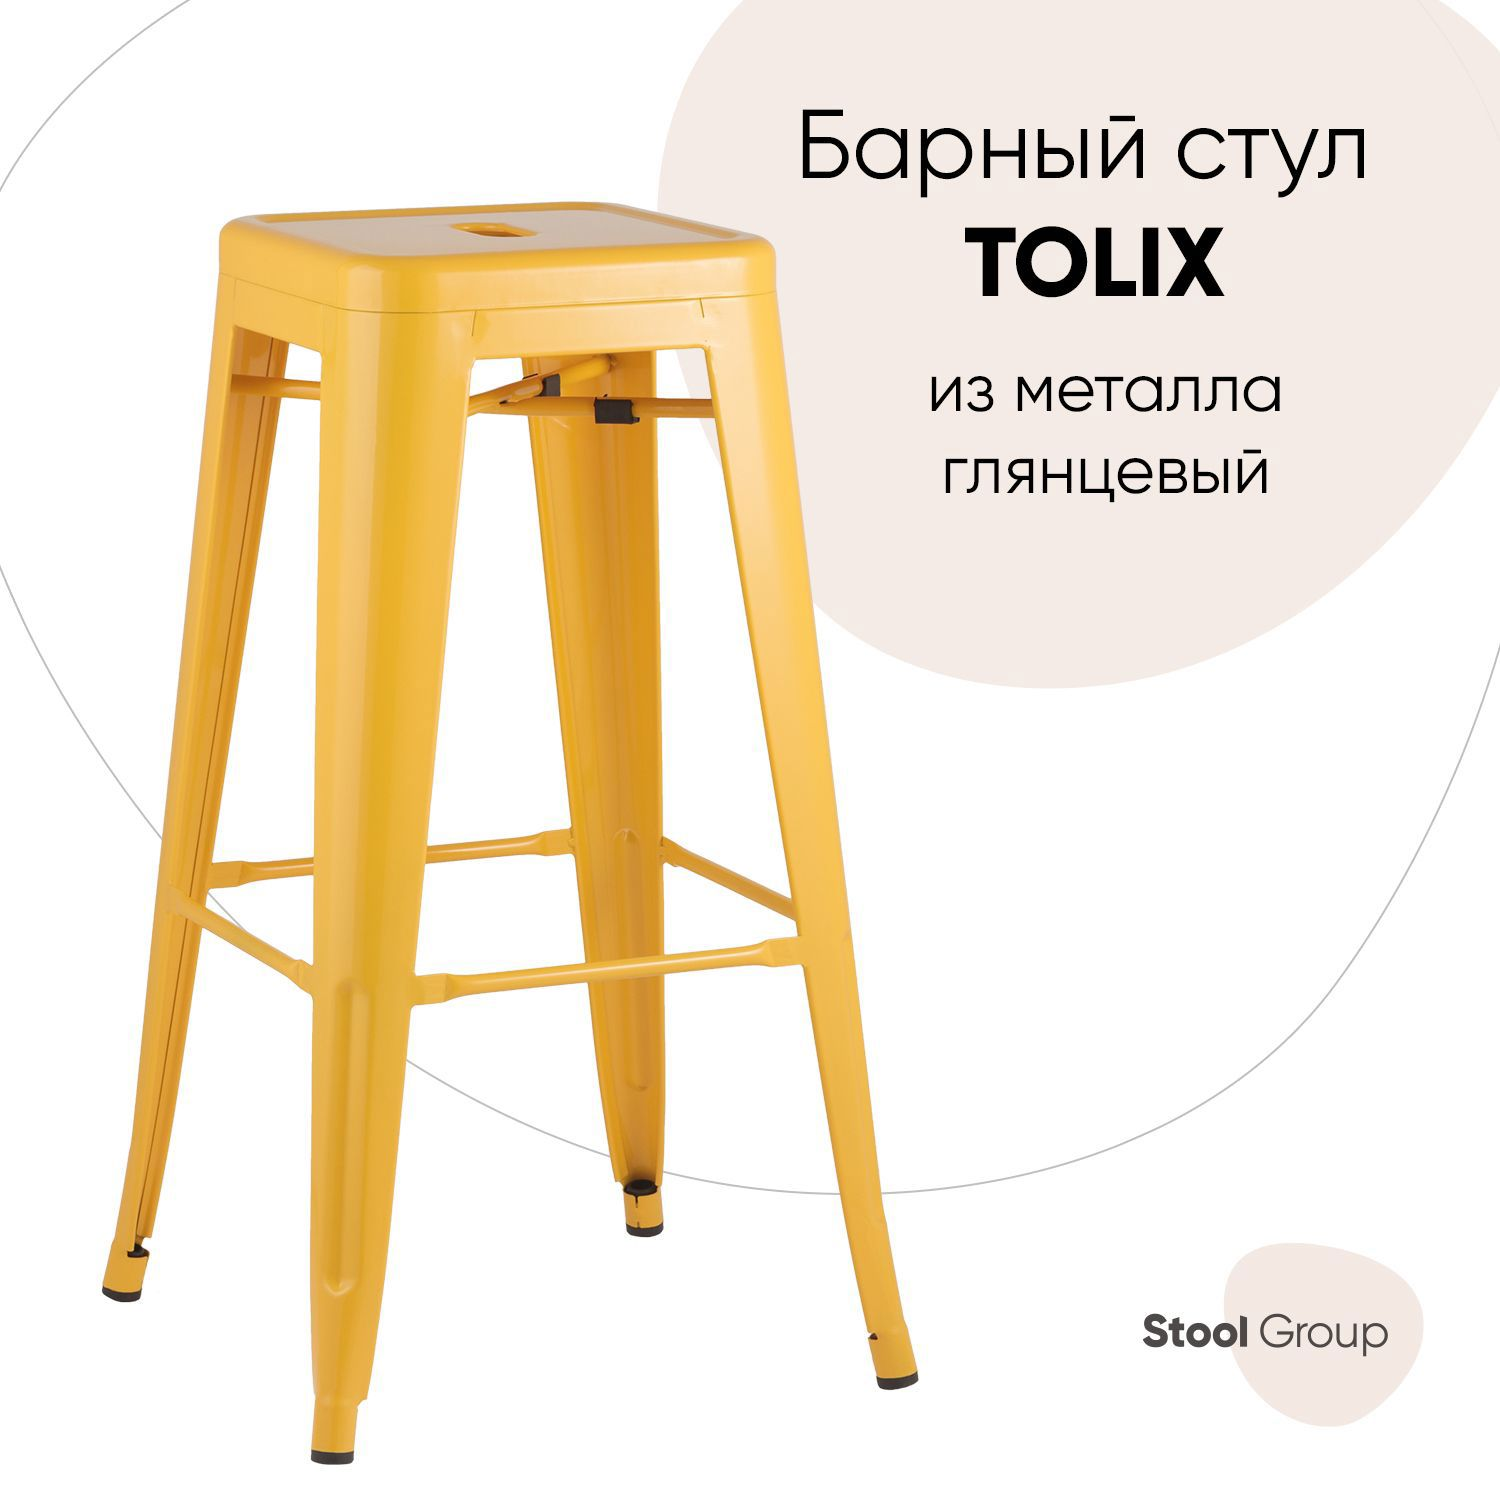 90479531 Барный стул Tolix 43x77x43 цвет желтый STLM-0244716 СТУЛ ГРУП